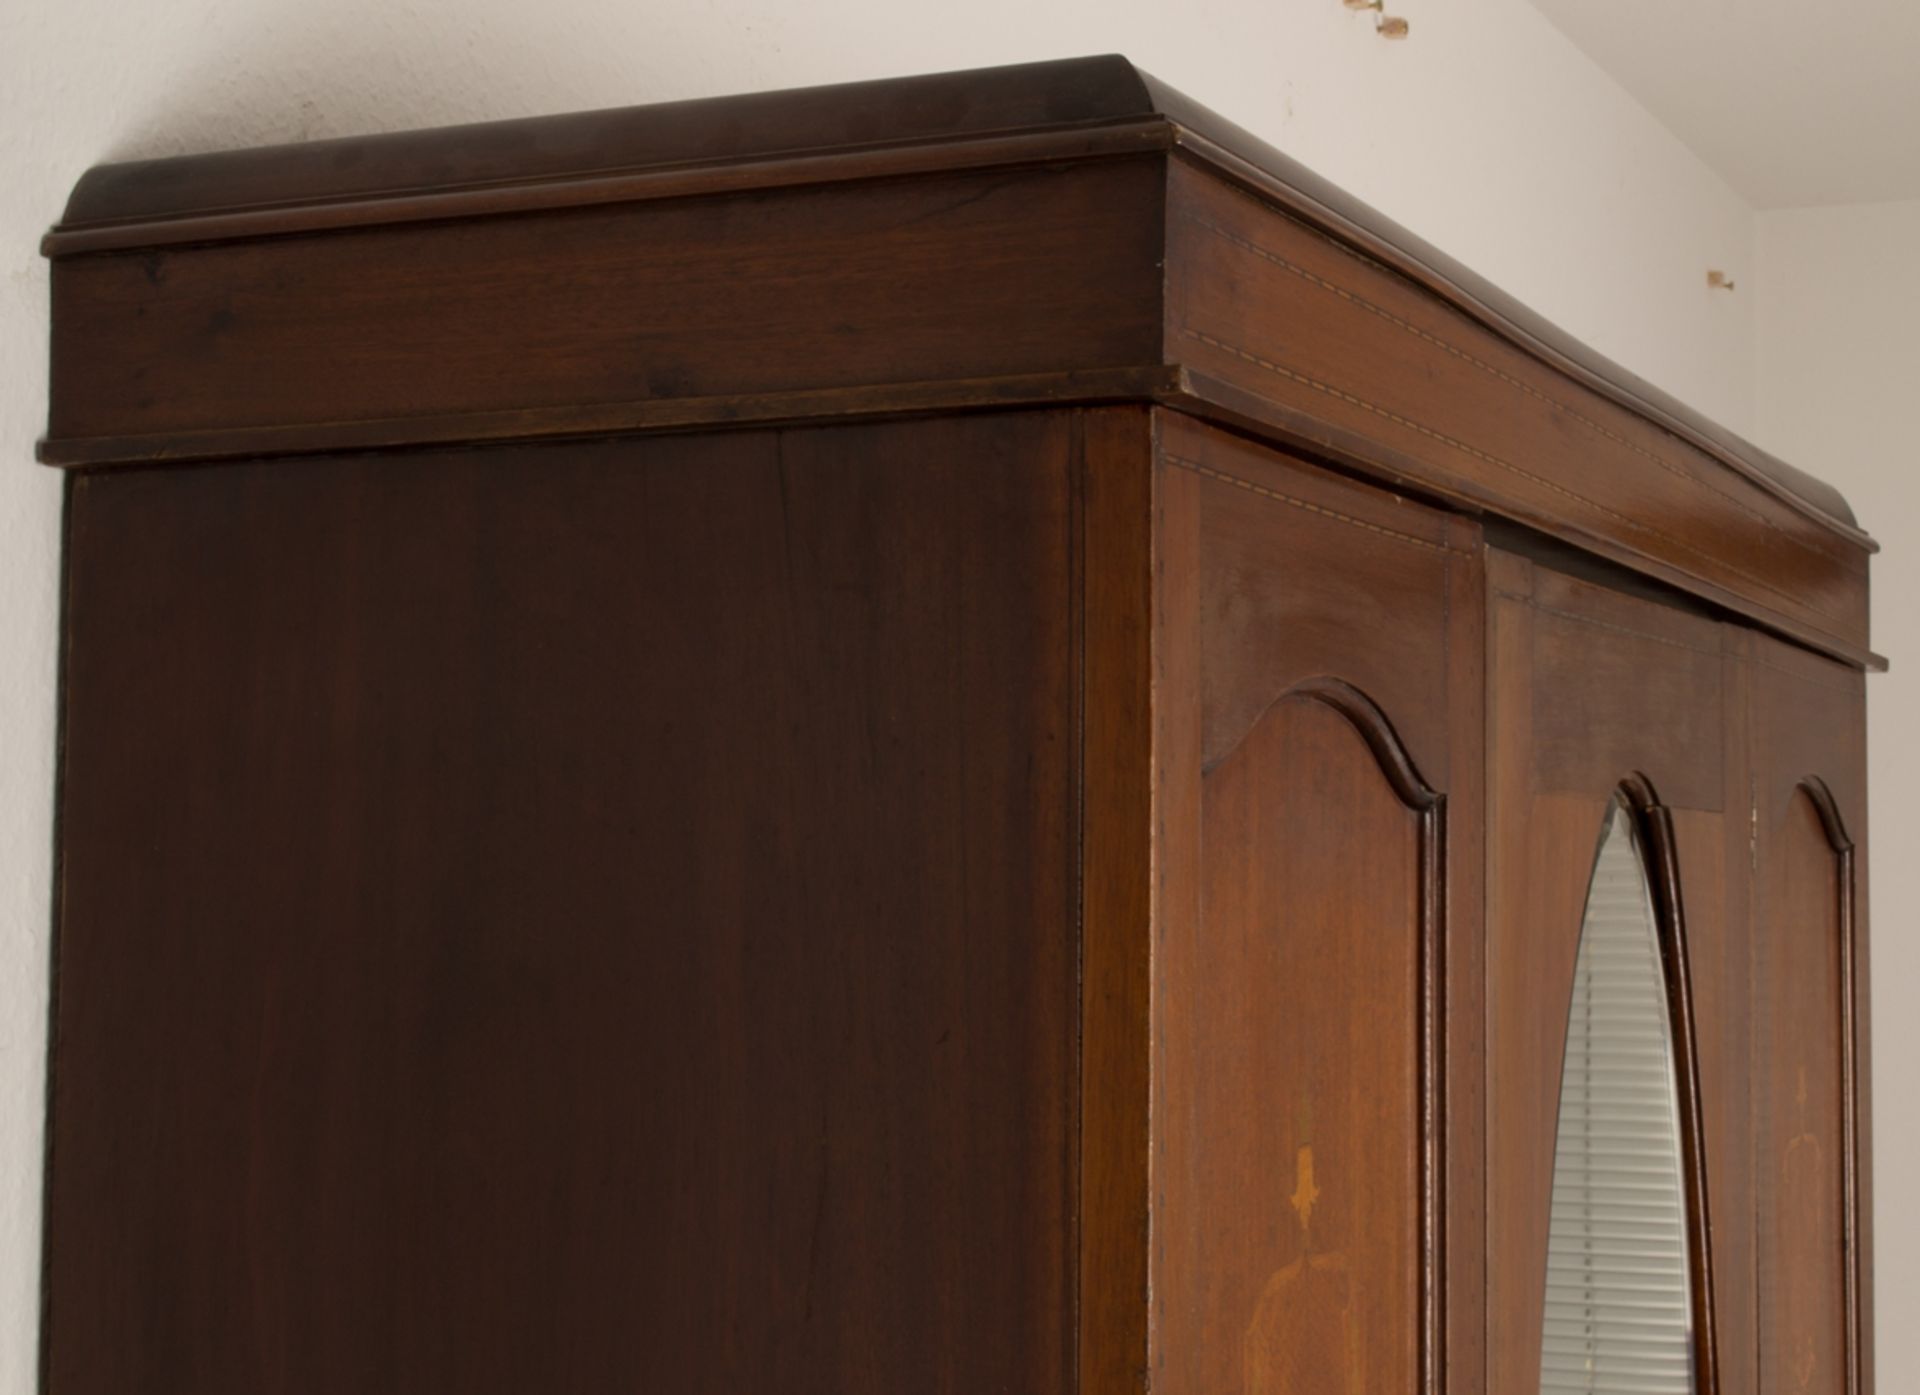 Englischer Garderobenschrank, Mahagoni furnierter, eintüriger Nadelholzkorpus mit ovalem, - Bild 6 aus 7